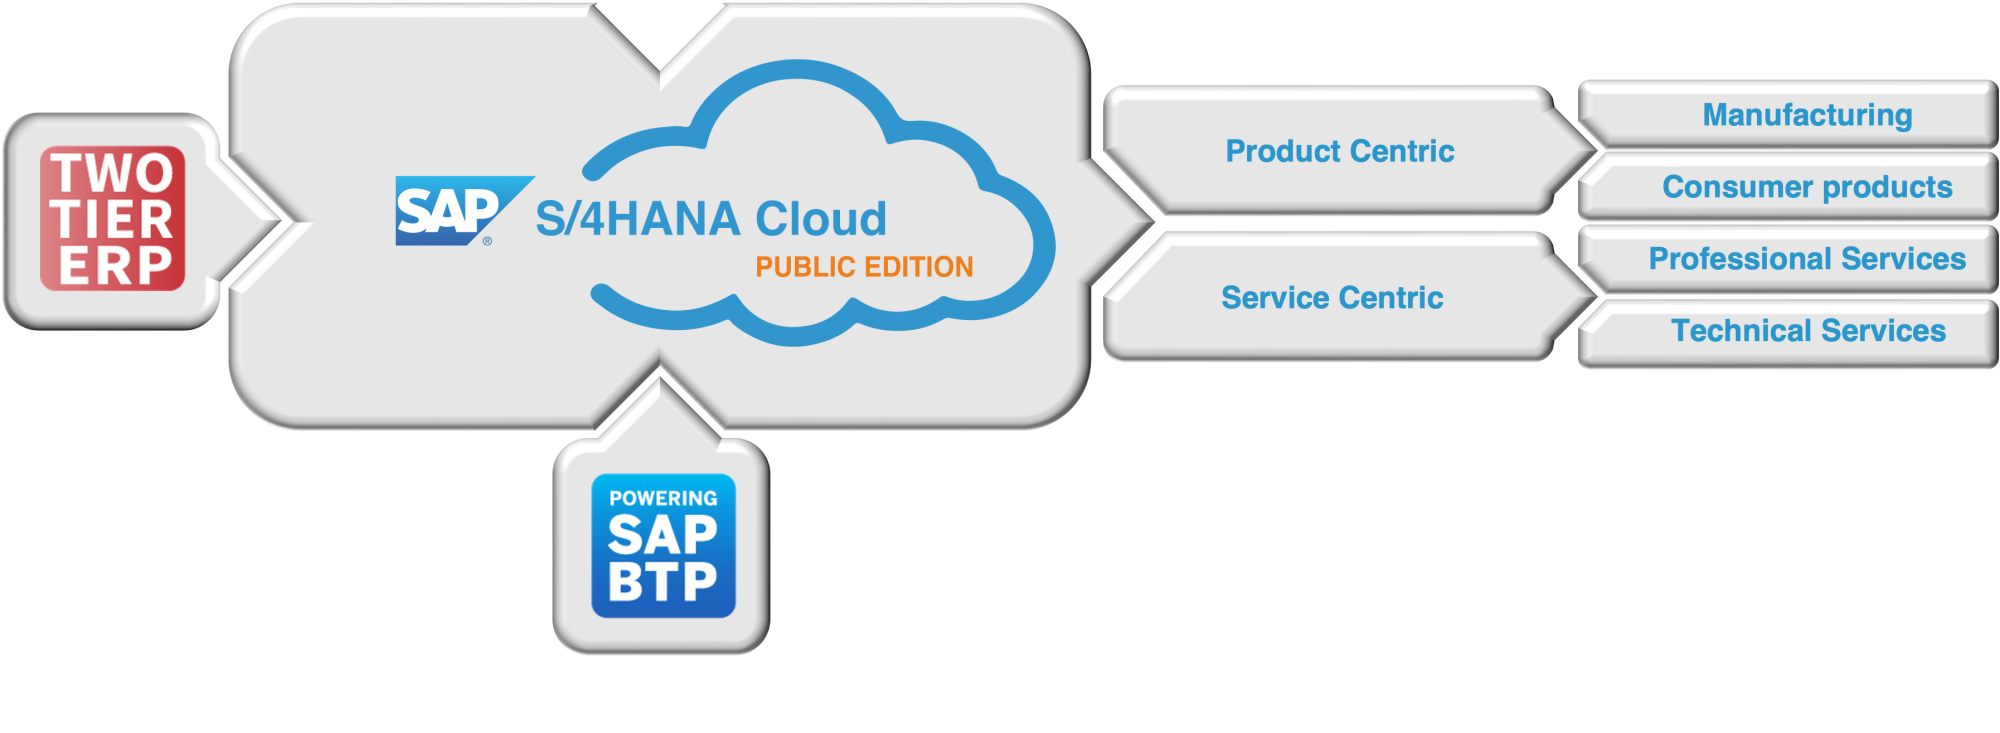 SAP S/4HANA Cloud, Public Edition Focus